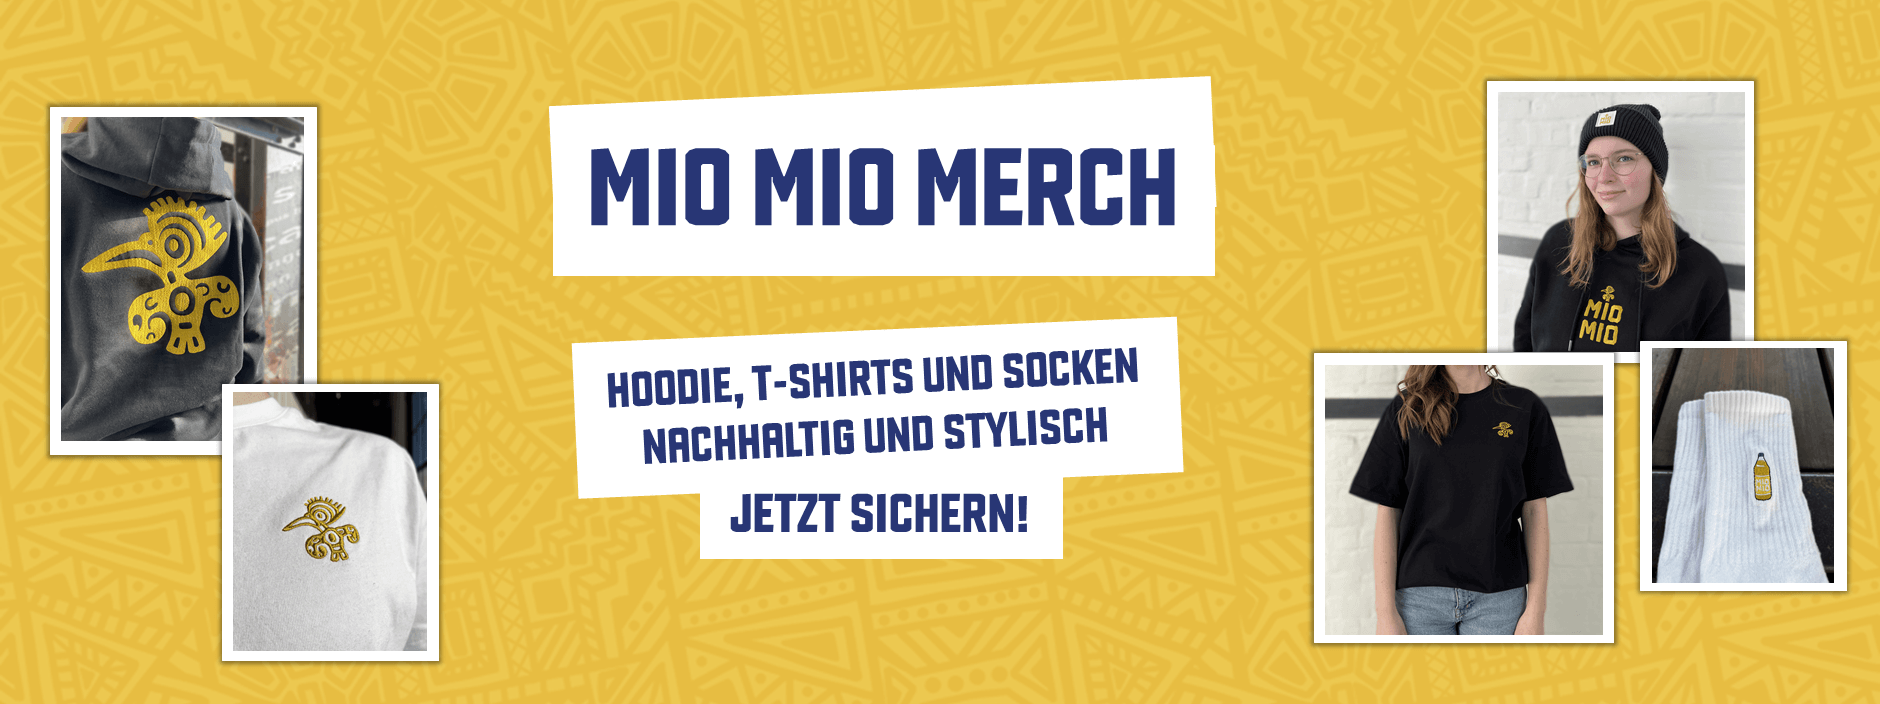 Neuer Mio Mio Merchandise Banner - Hoodie, T-Shirt und Socken